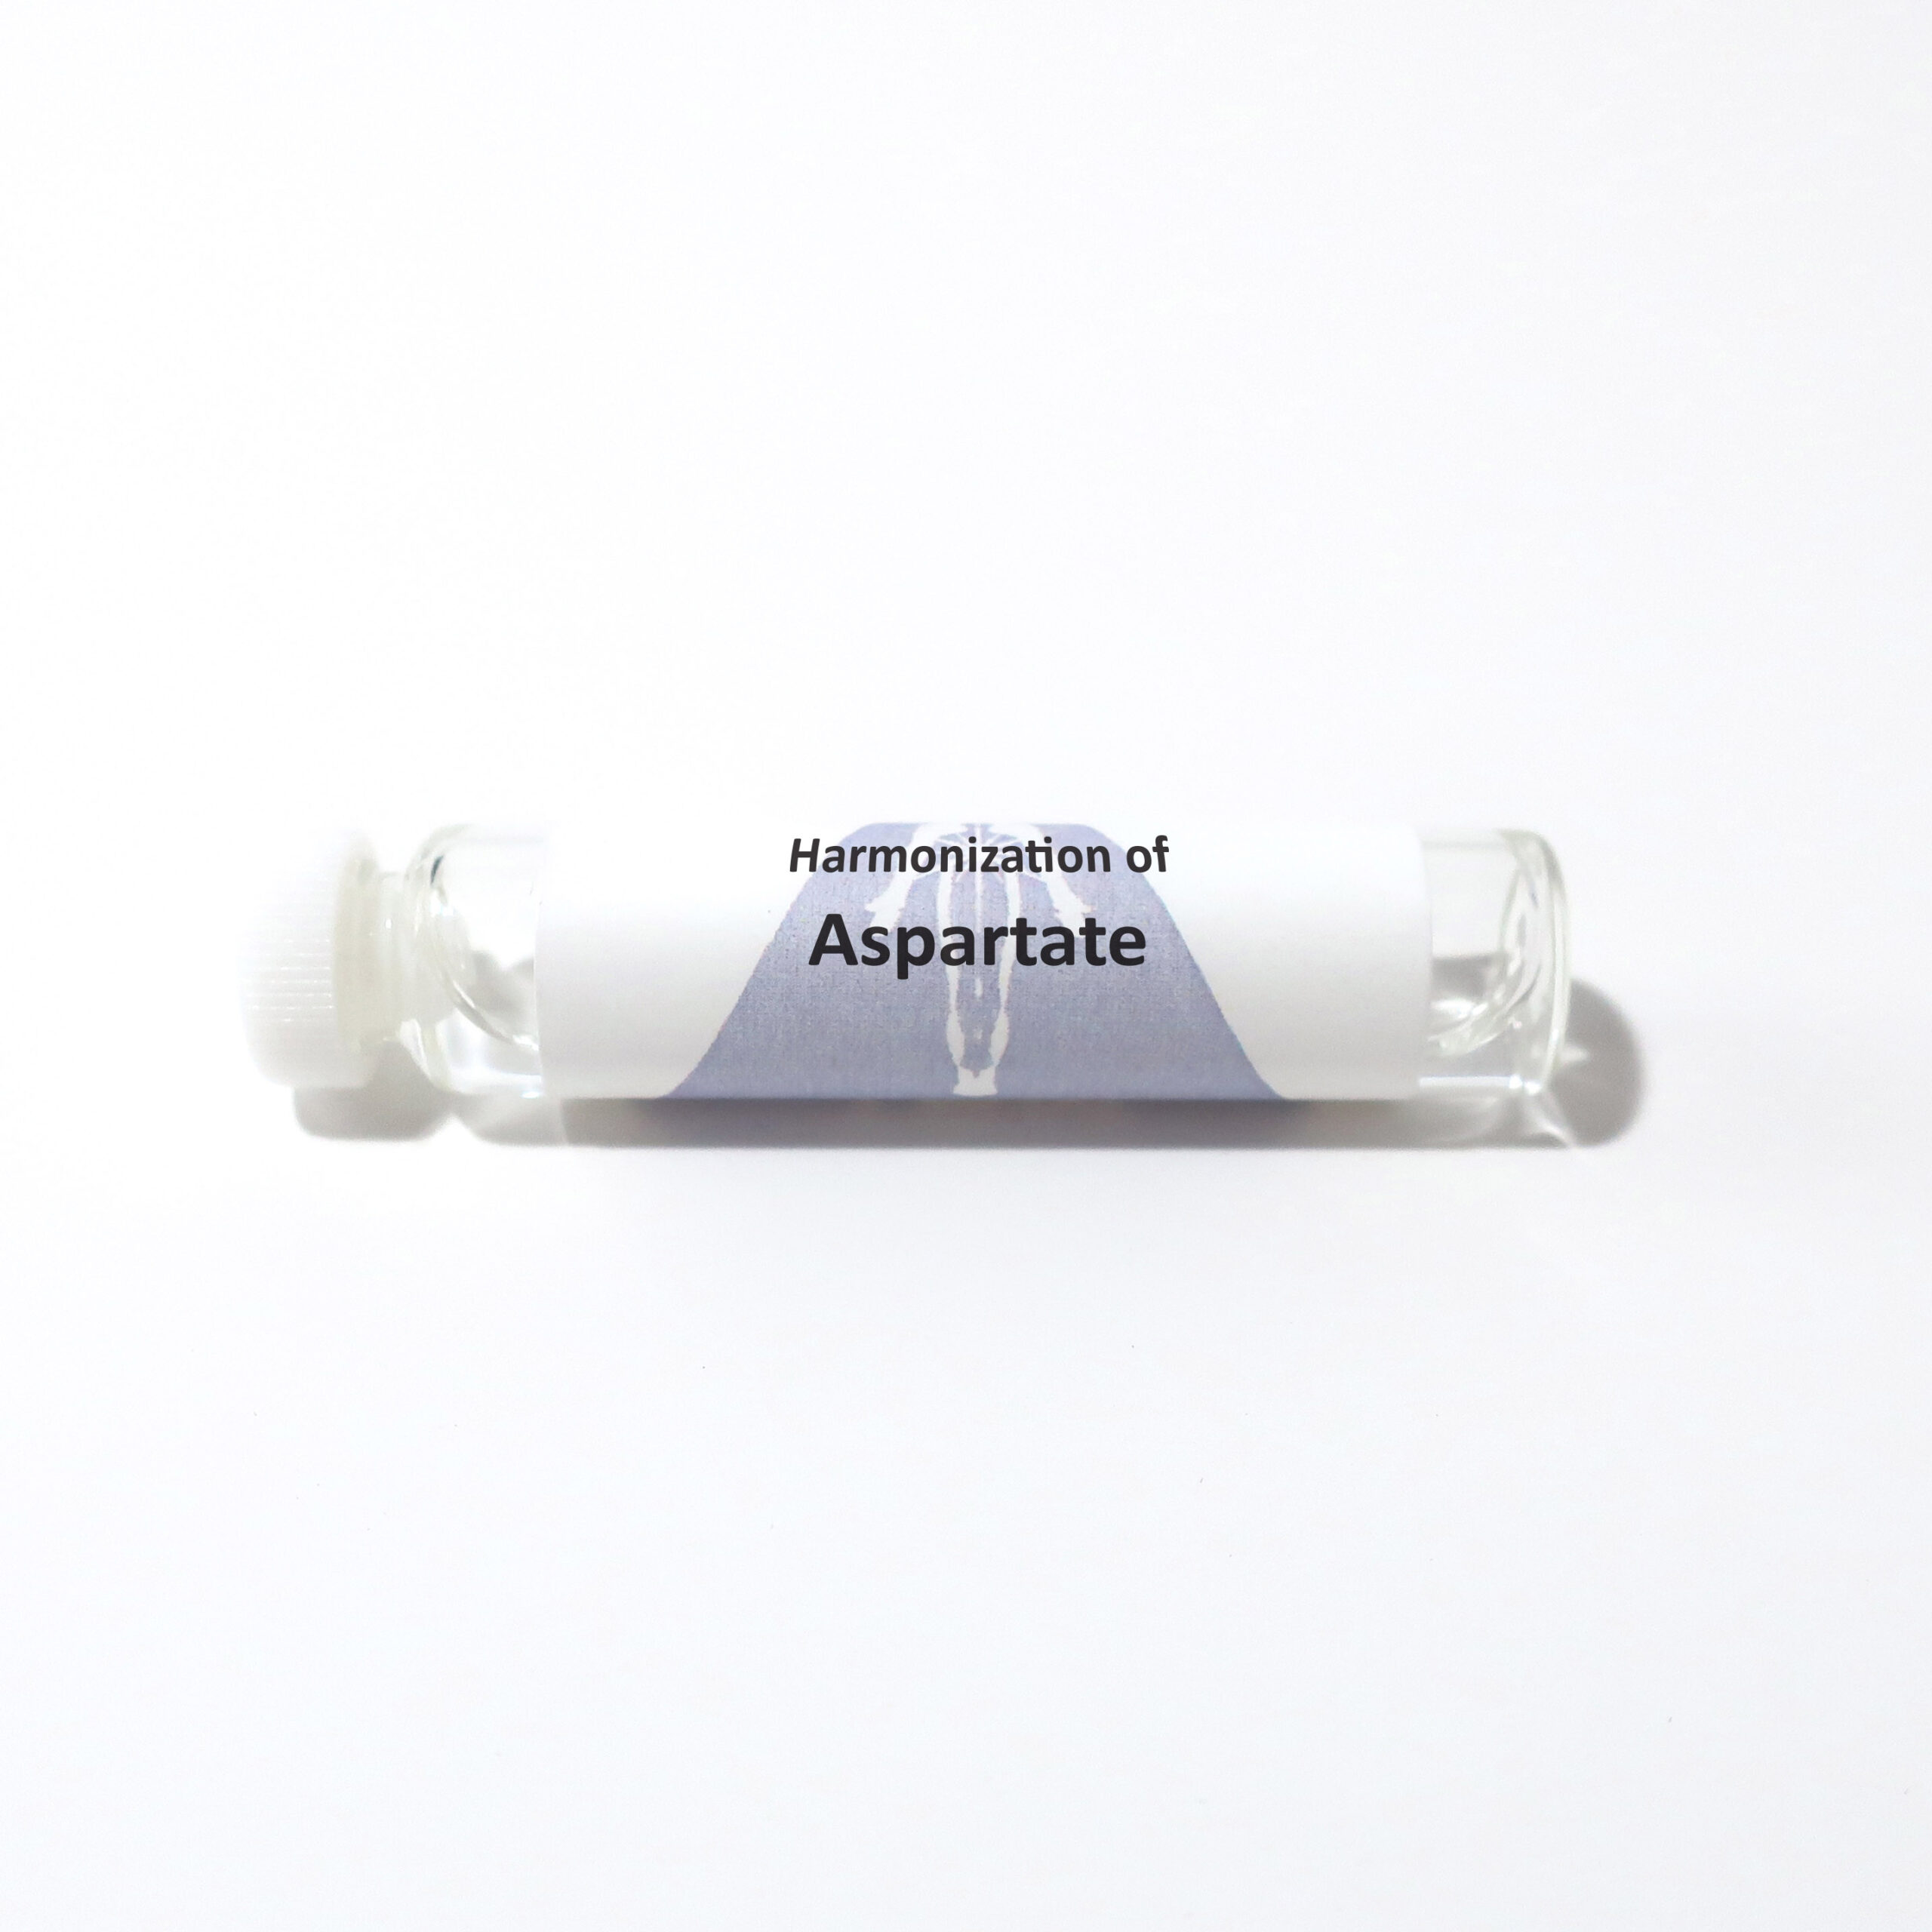 Aspartate